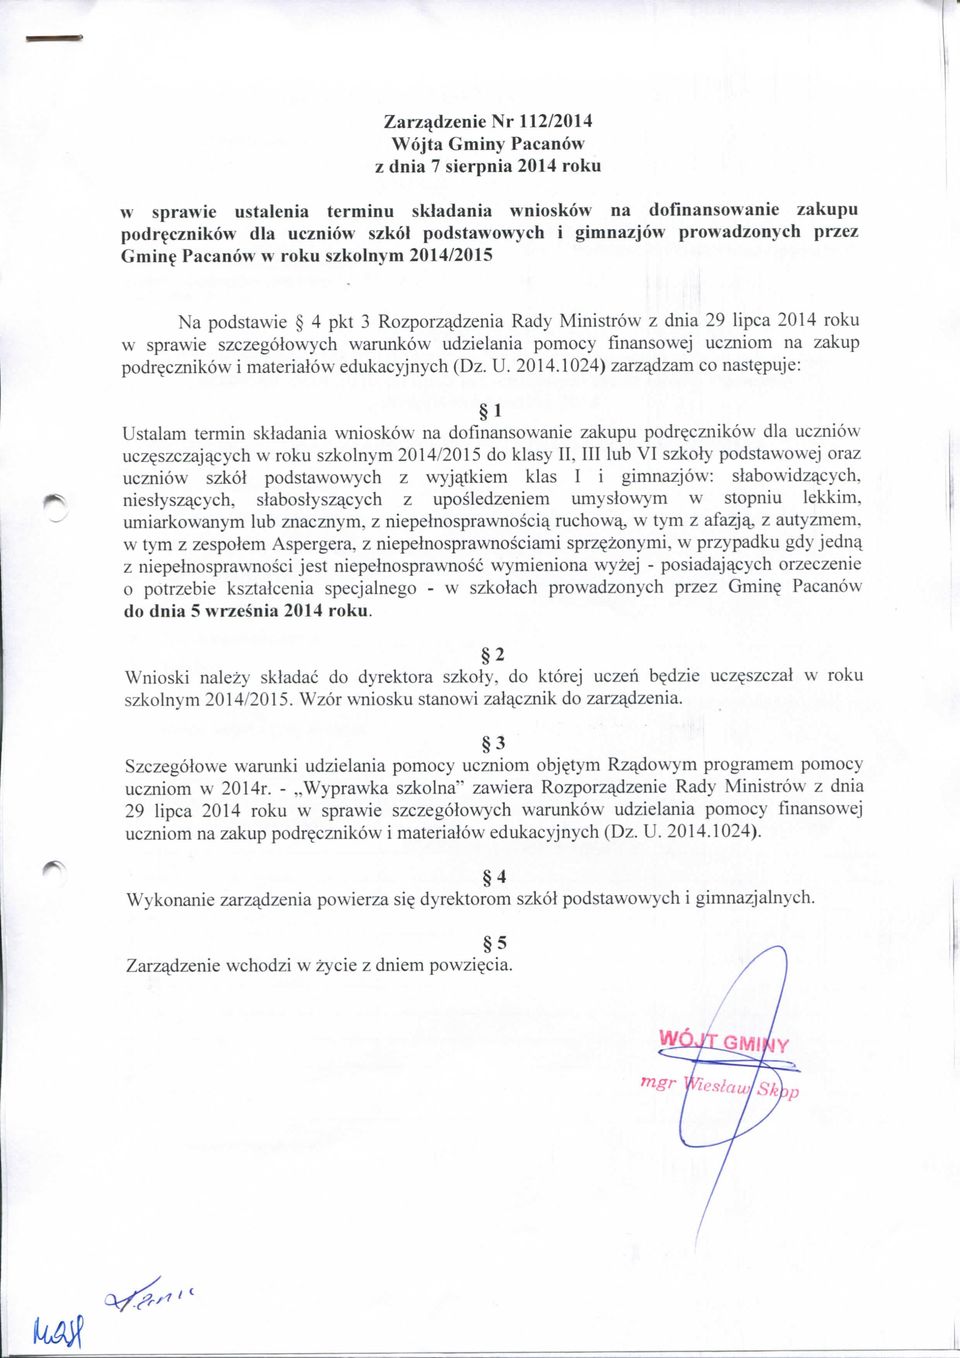 uczniom na zakup podr^cznikow i materialow edukacyjnych (Dz. U. 2014.